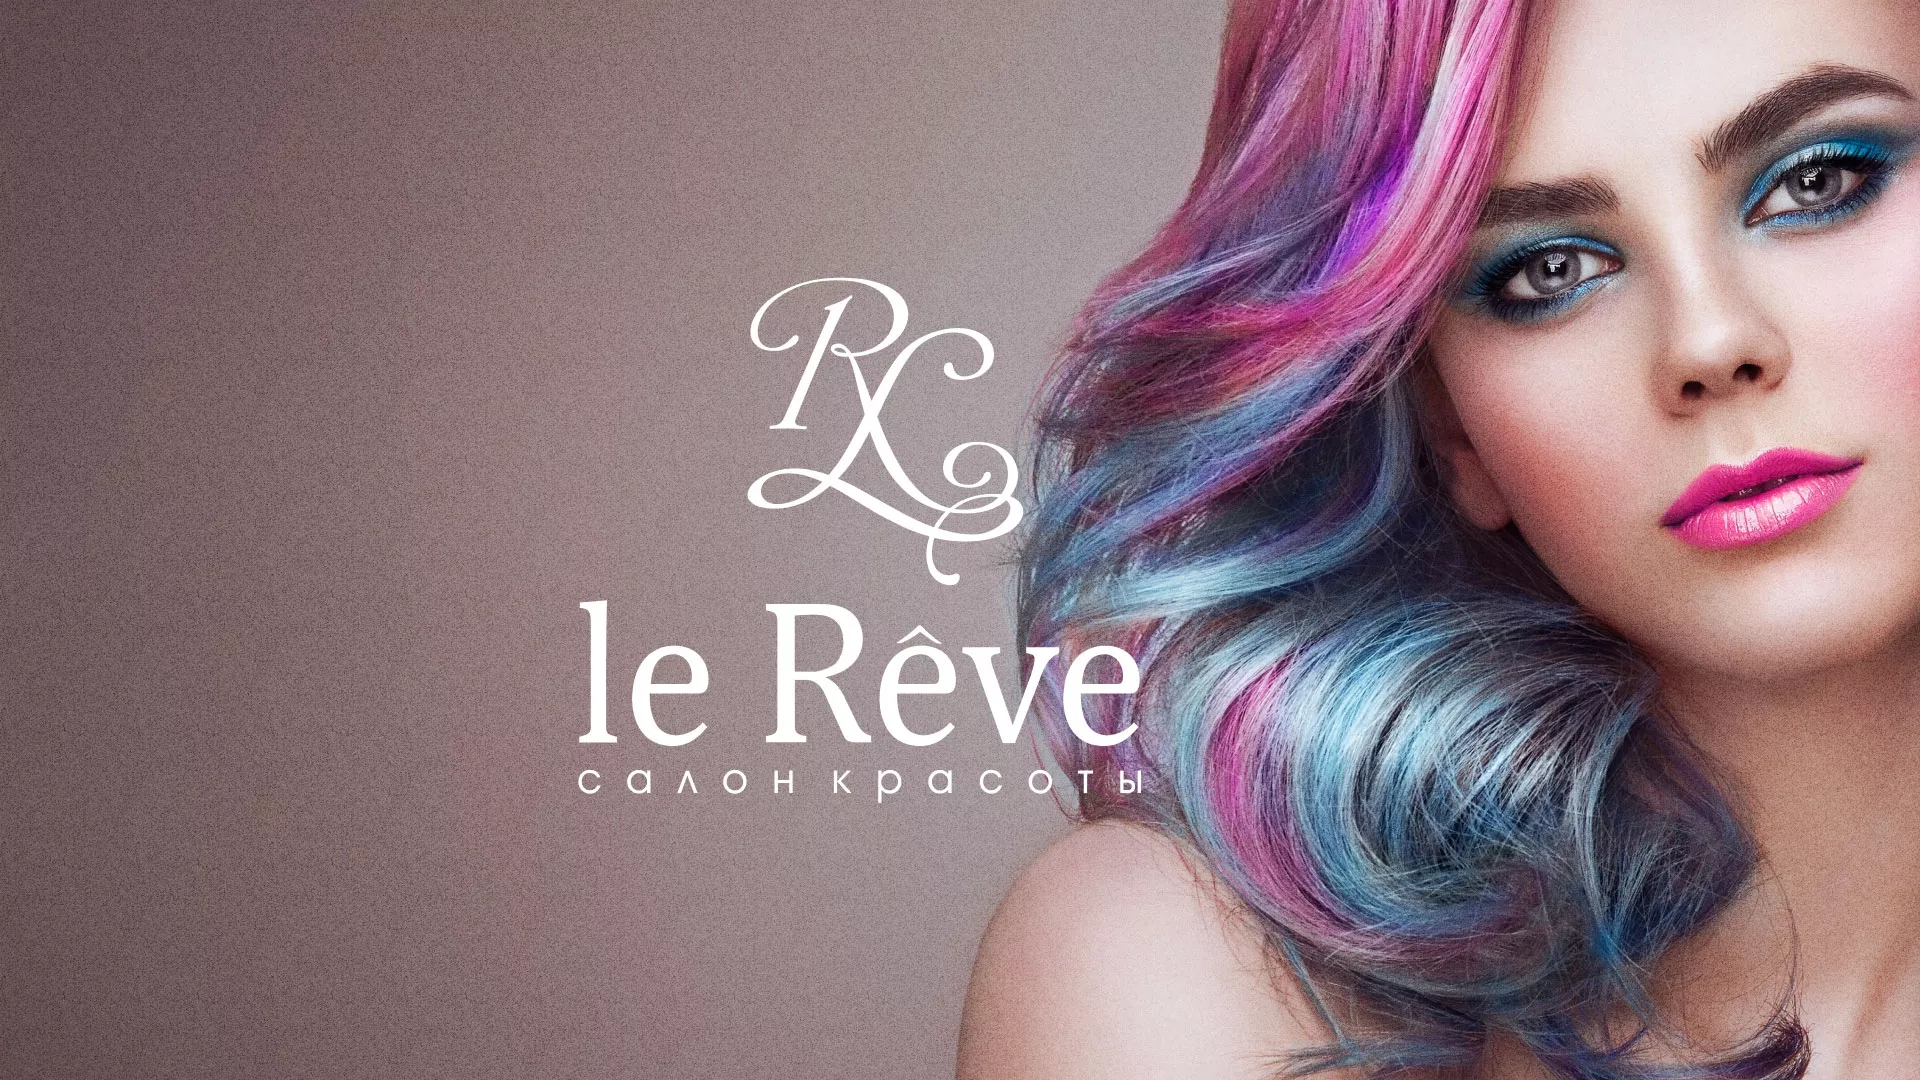 Создание сайта для салона красоты «Le Reve» в Мценске